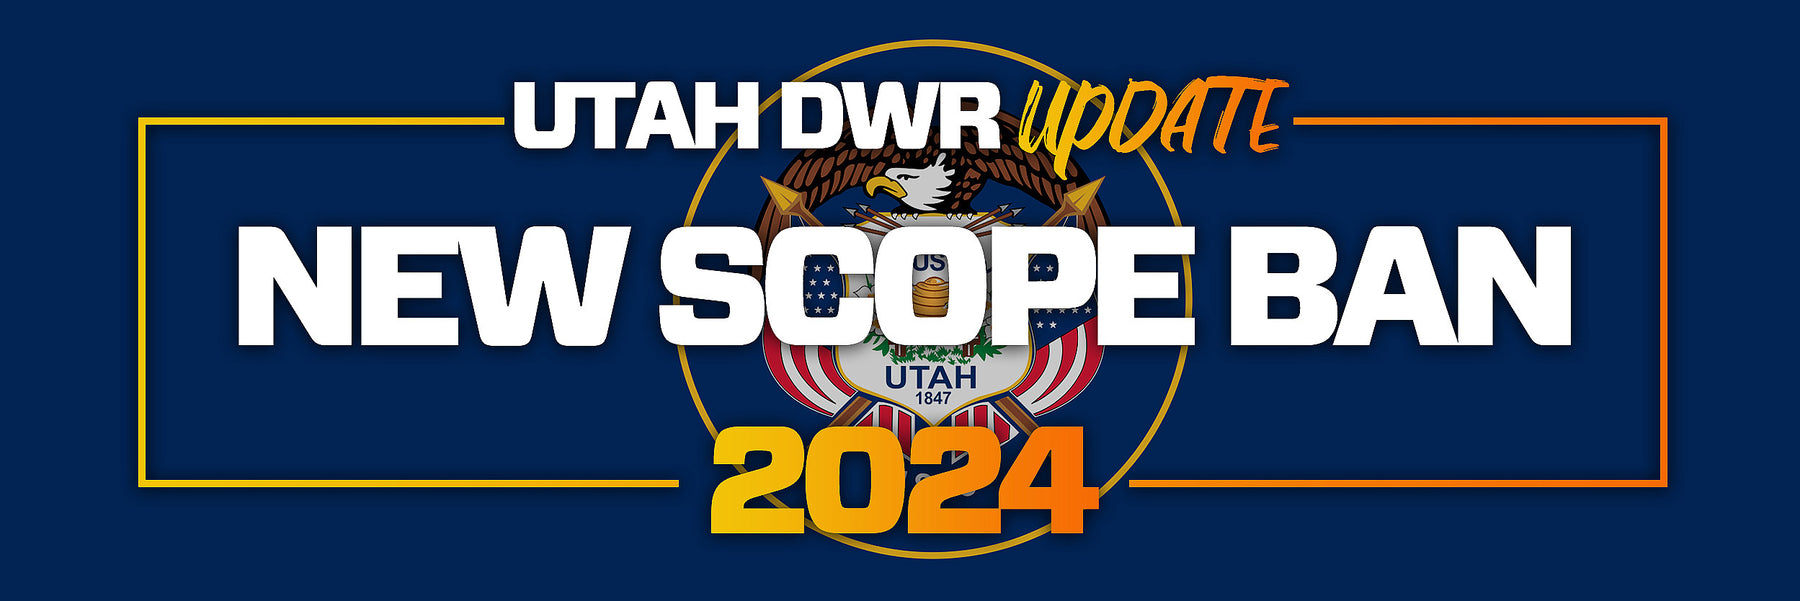 Utah Bans Scopes - 2024 Muzzleloader - Press Release